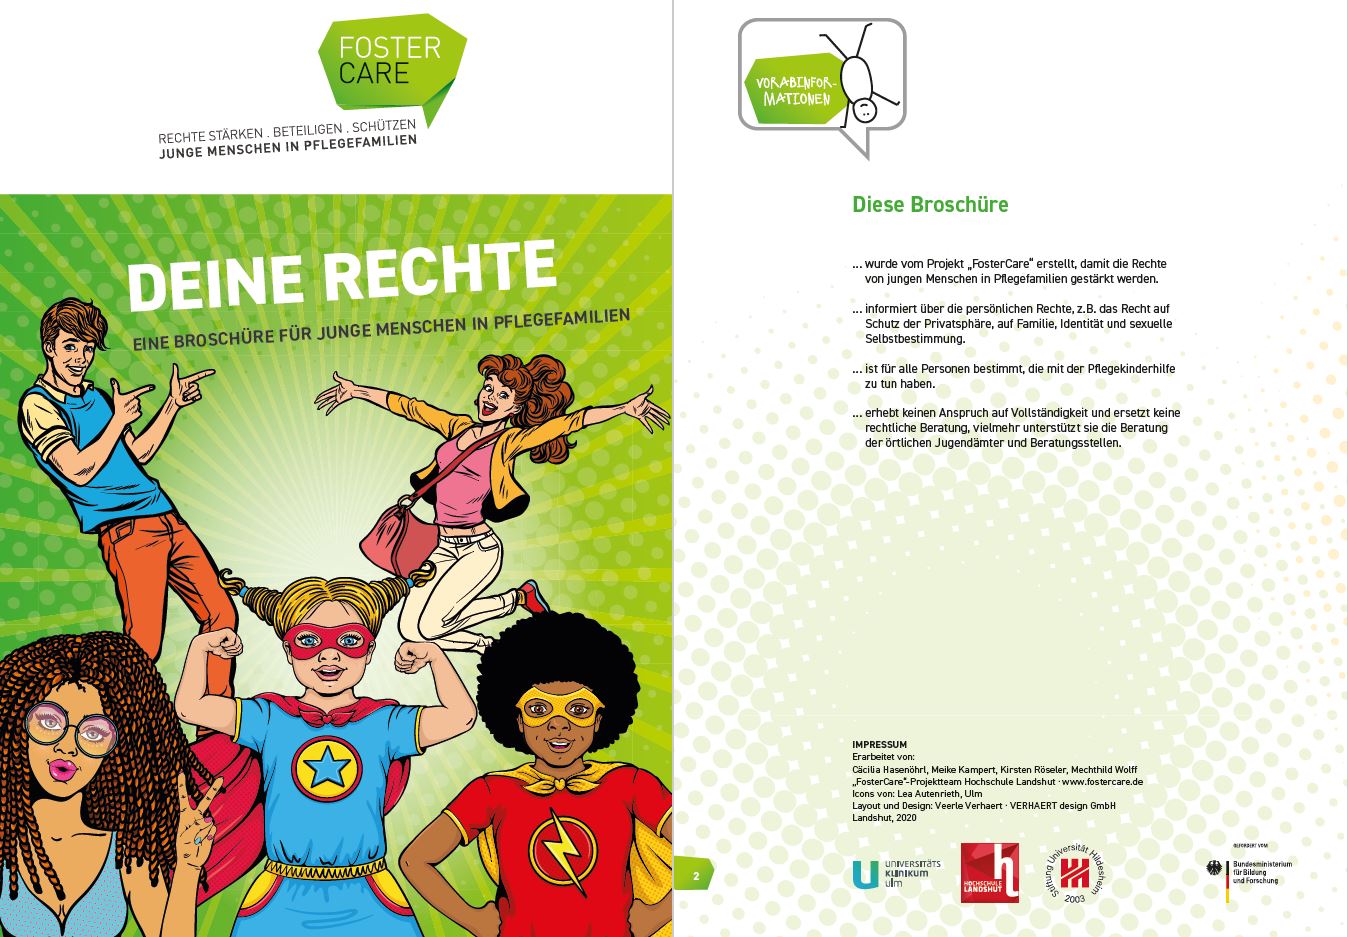 Broschüre "Deine Rechte" für Pflegekinder